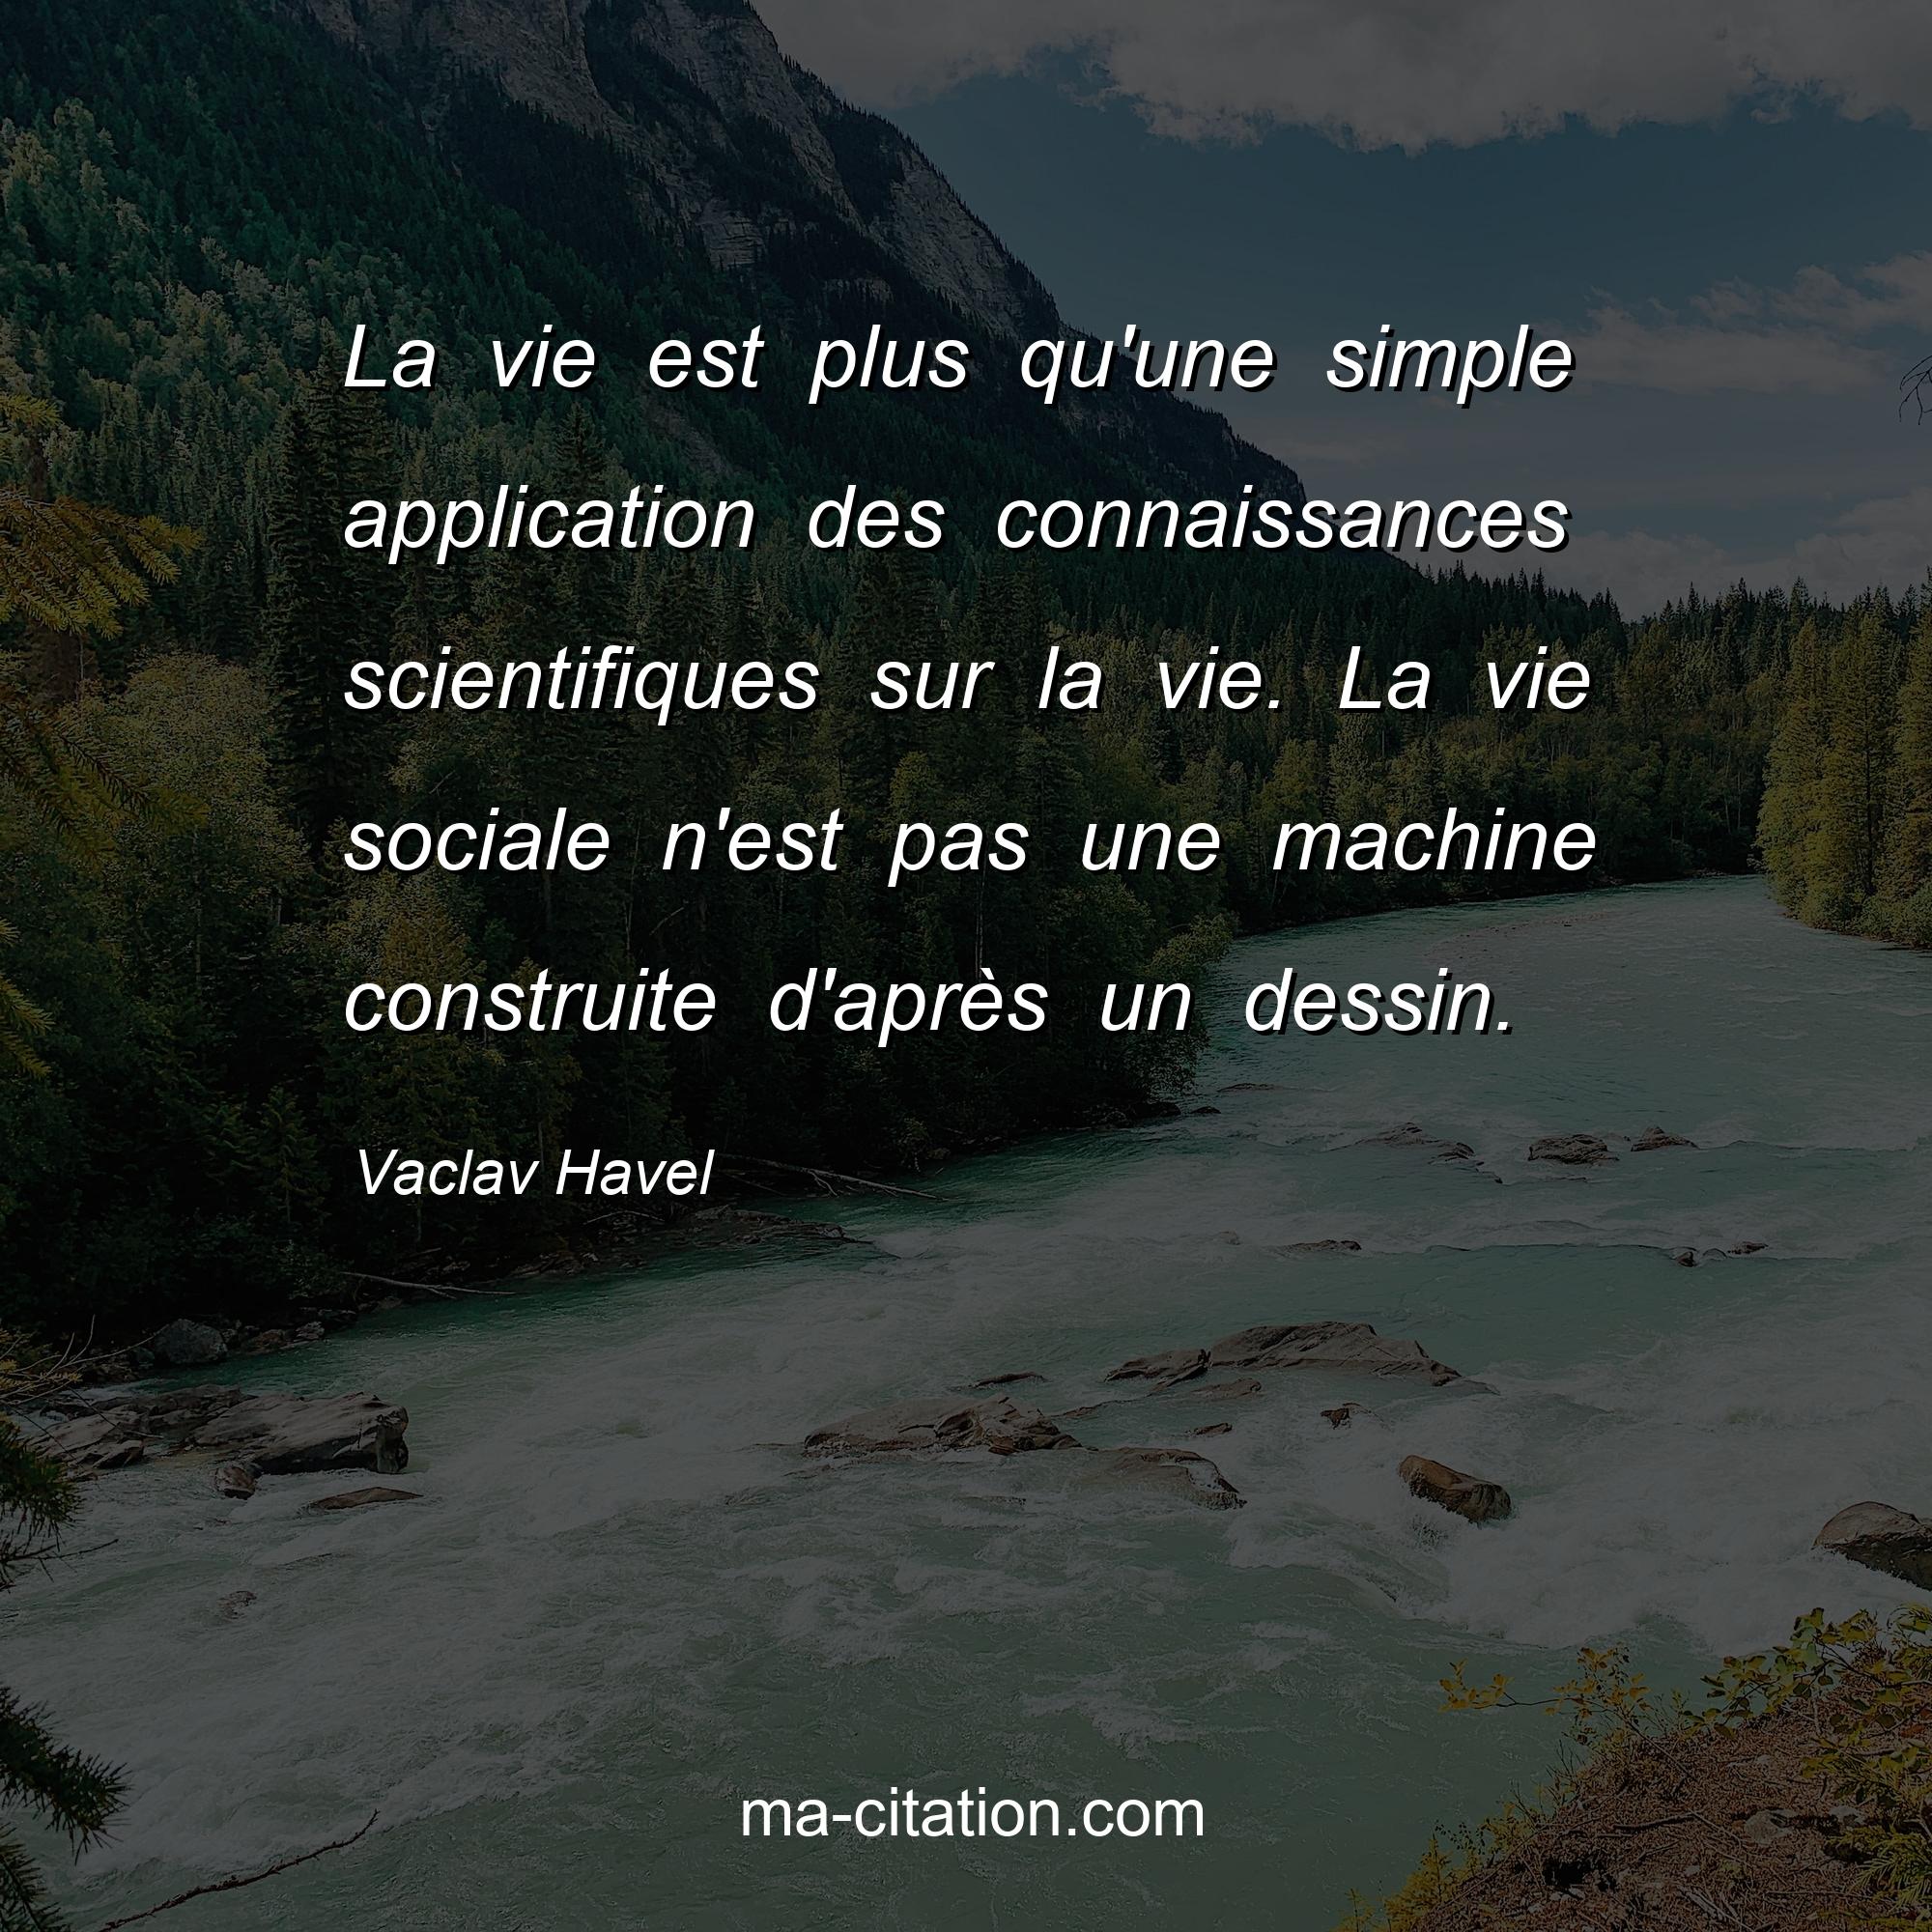 Vaclav Havel : La vie est plus qu'une simple application des connaissances scientifiques sur la vie. La vie sociale n'est pas une machine construite d'après un dessin.